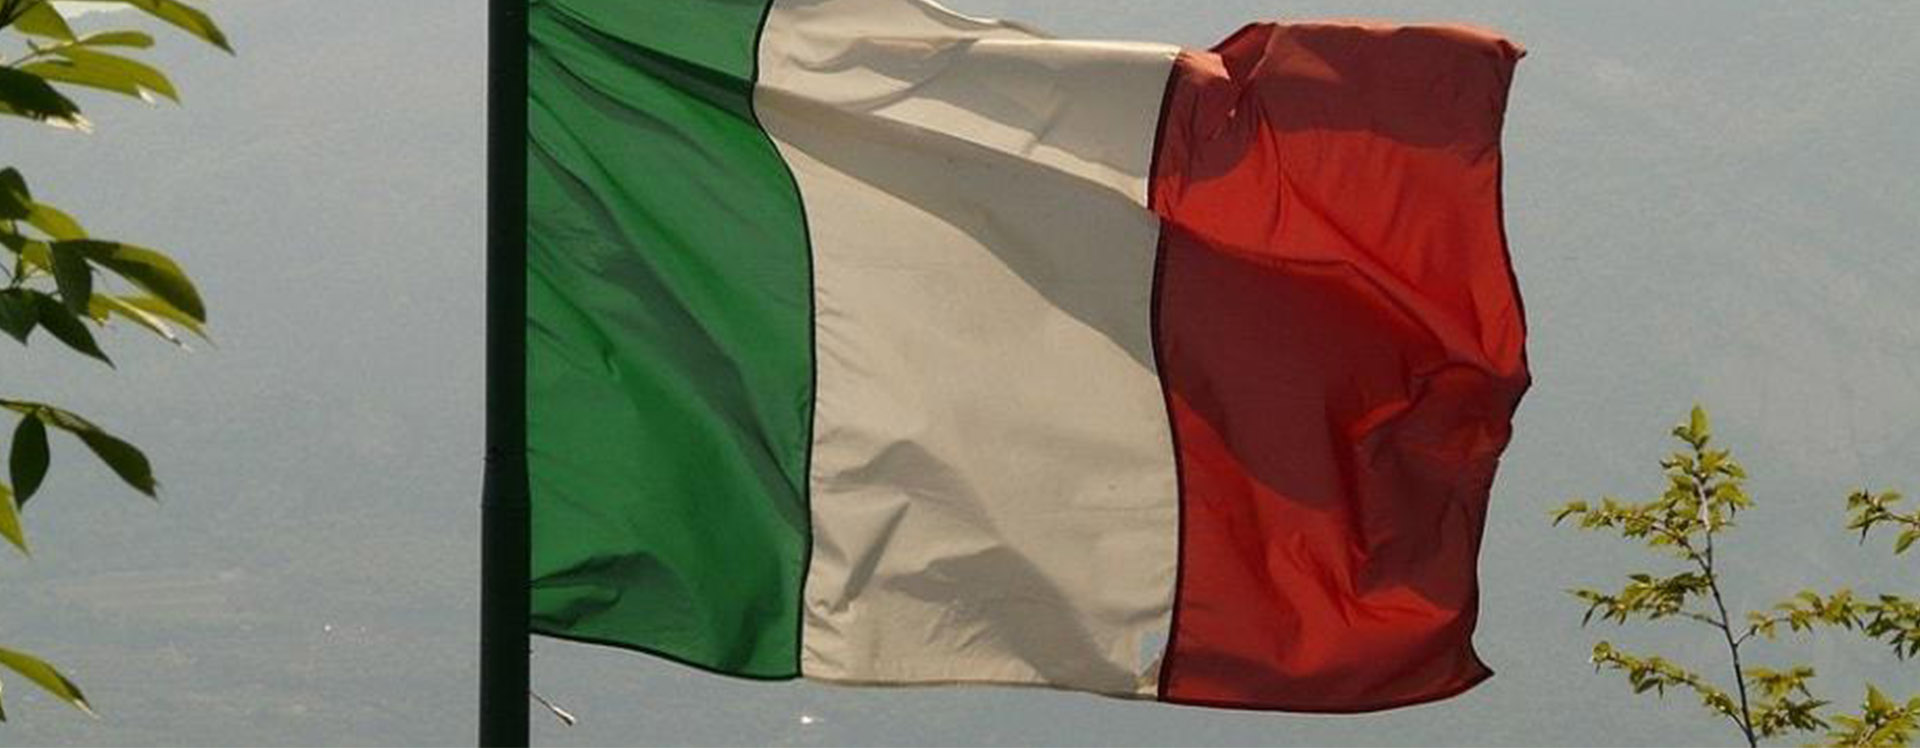 6 Dicas para você falar italiano fluente